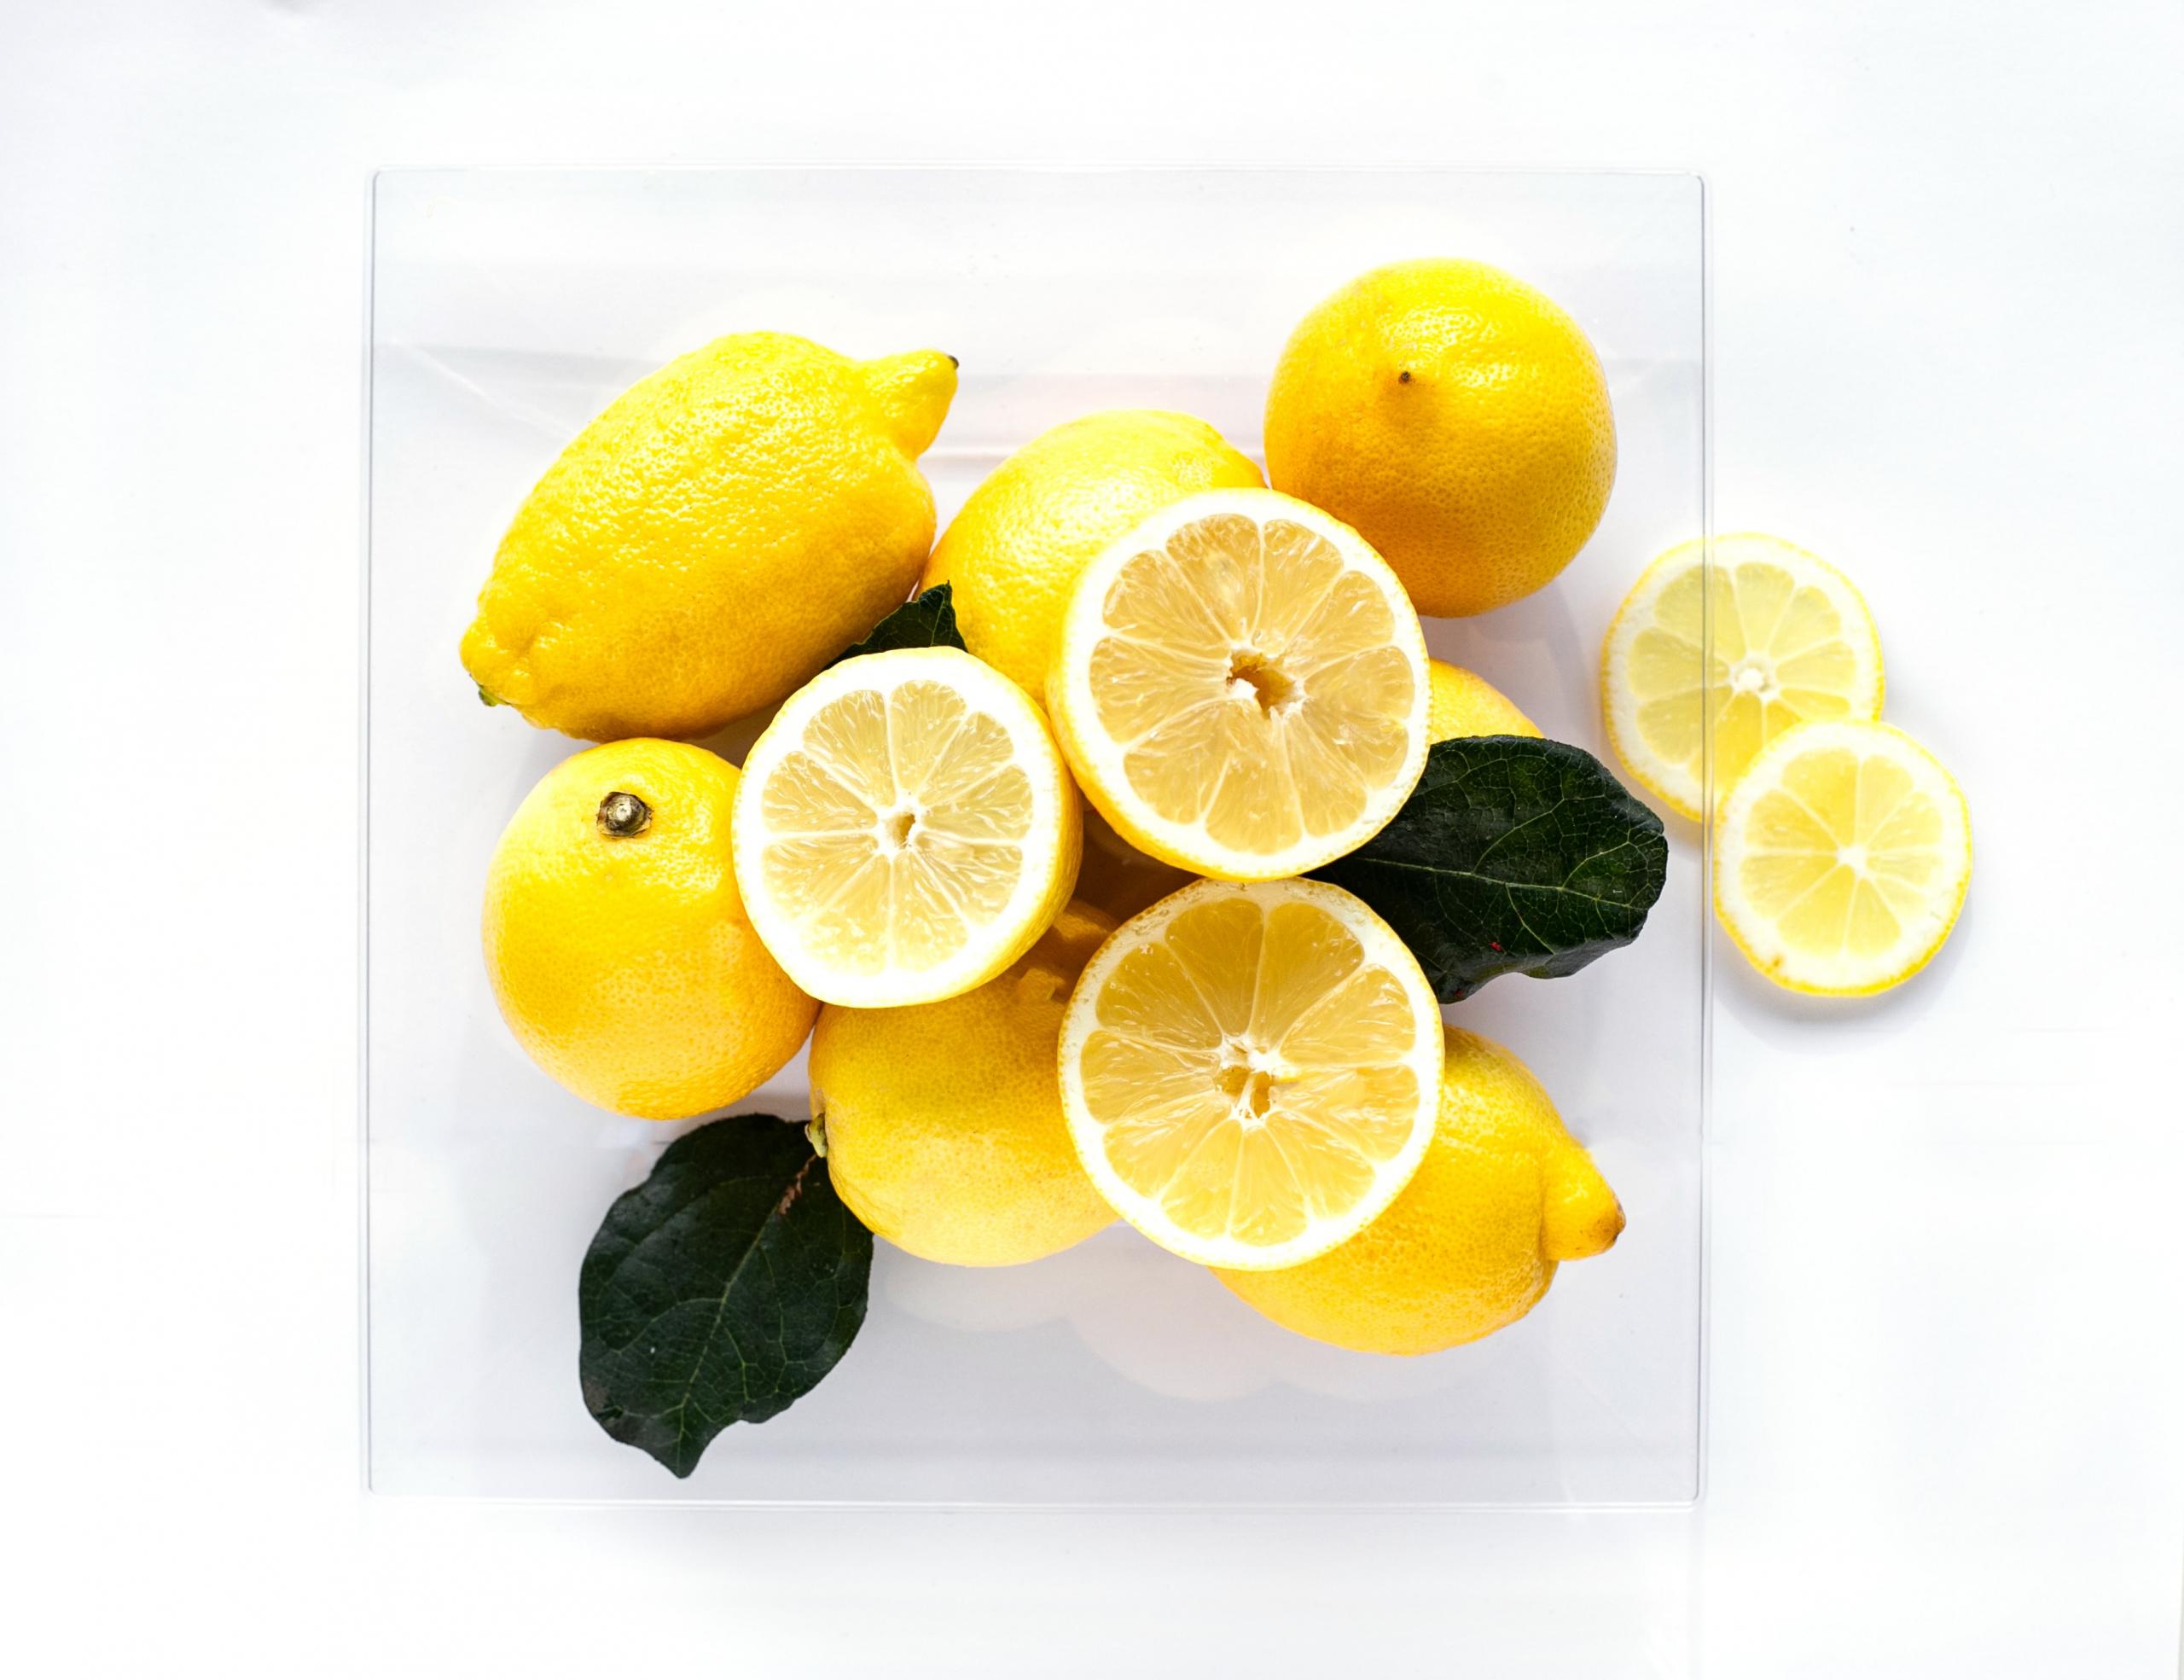 Kyselina citronová – levný pomocník do každé kuchyně | Apetit Online